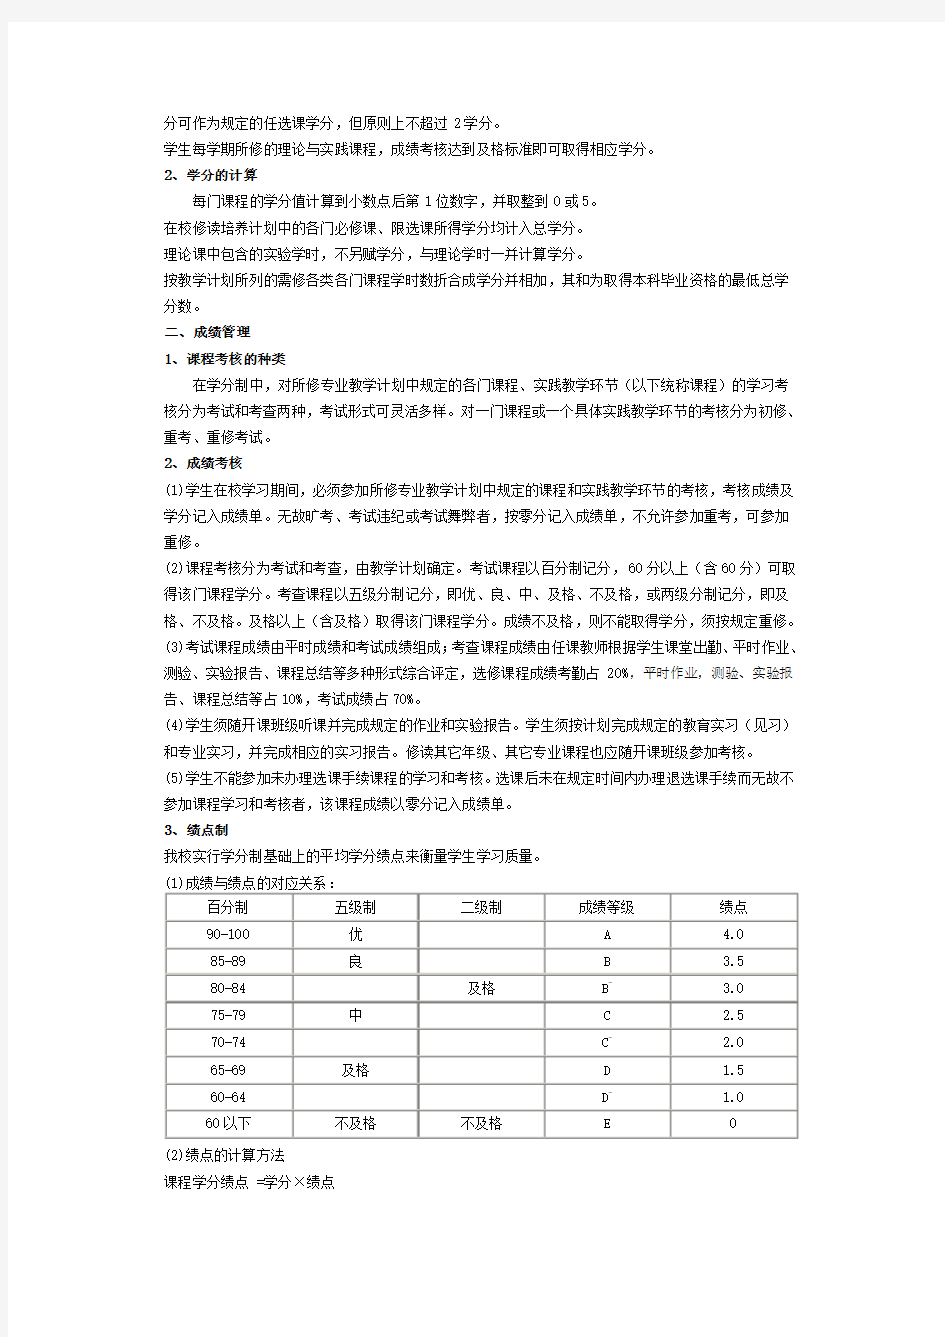 内蒙古民族大学学分制教学管理及学籍管理办法(试行)